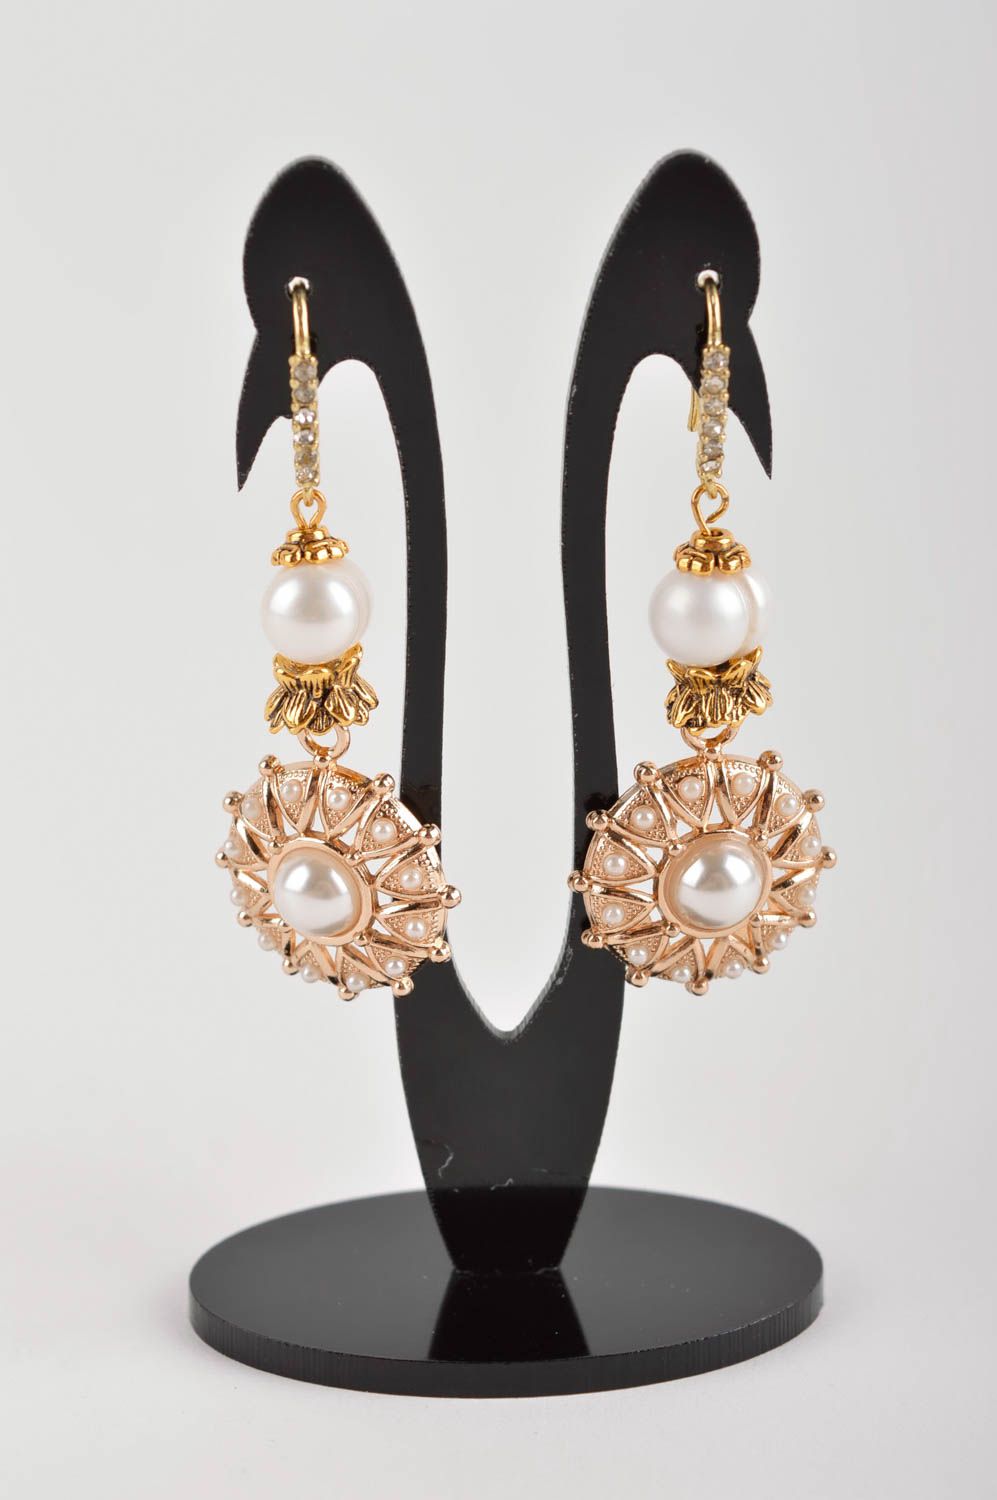 Handmade earrings pearl jewelry dangling earrings fashion accessories for women photo 2